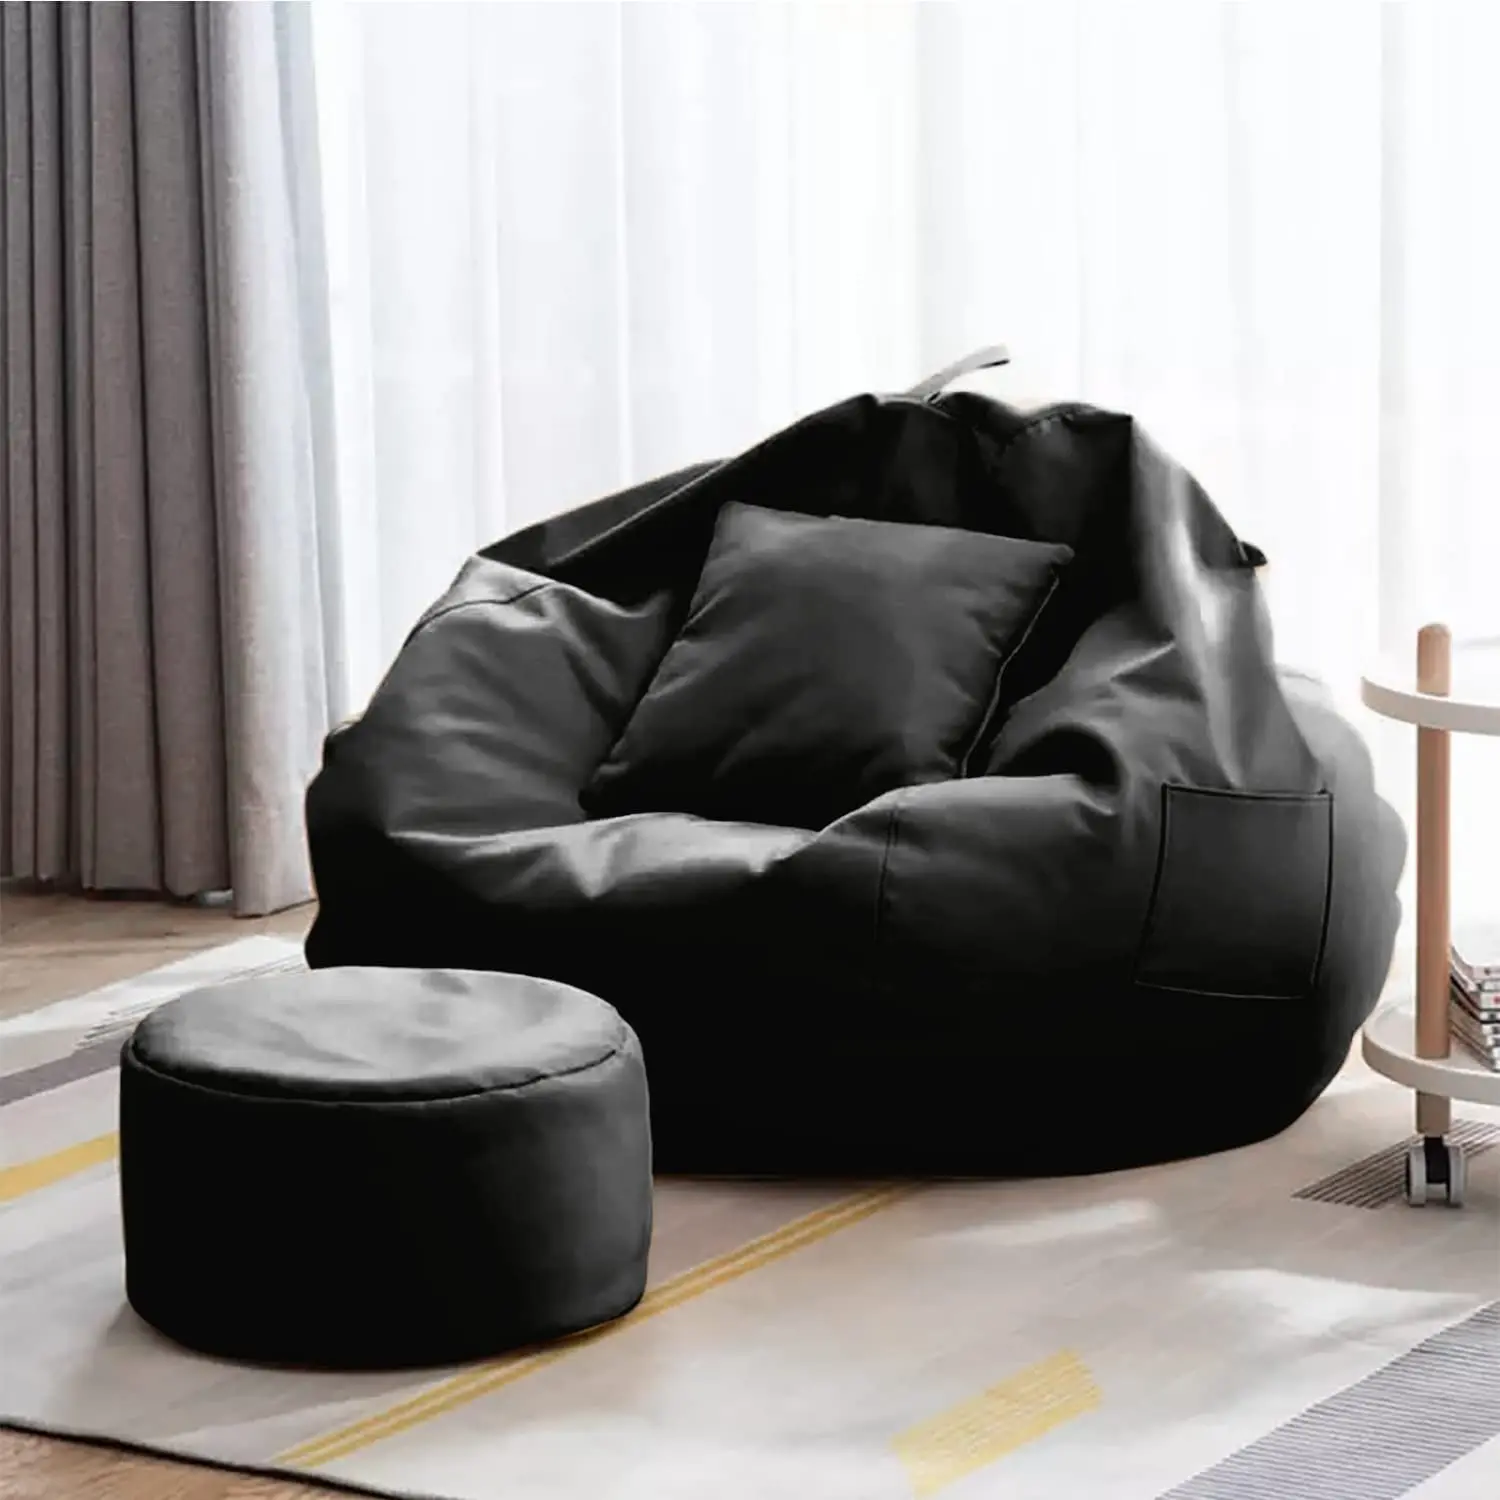 XXXL sac de fèves en cuir noir gonflable café géant confortable intérieur extérieur garçon paresseux loisirs sacs de fèves chaises housse de canapé canapé haricot